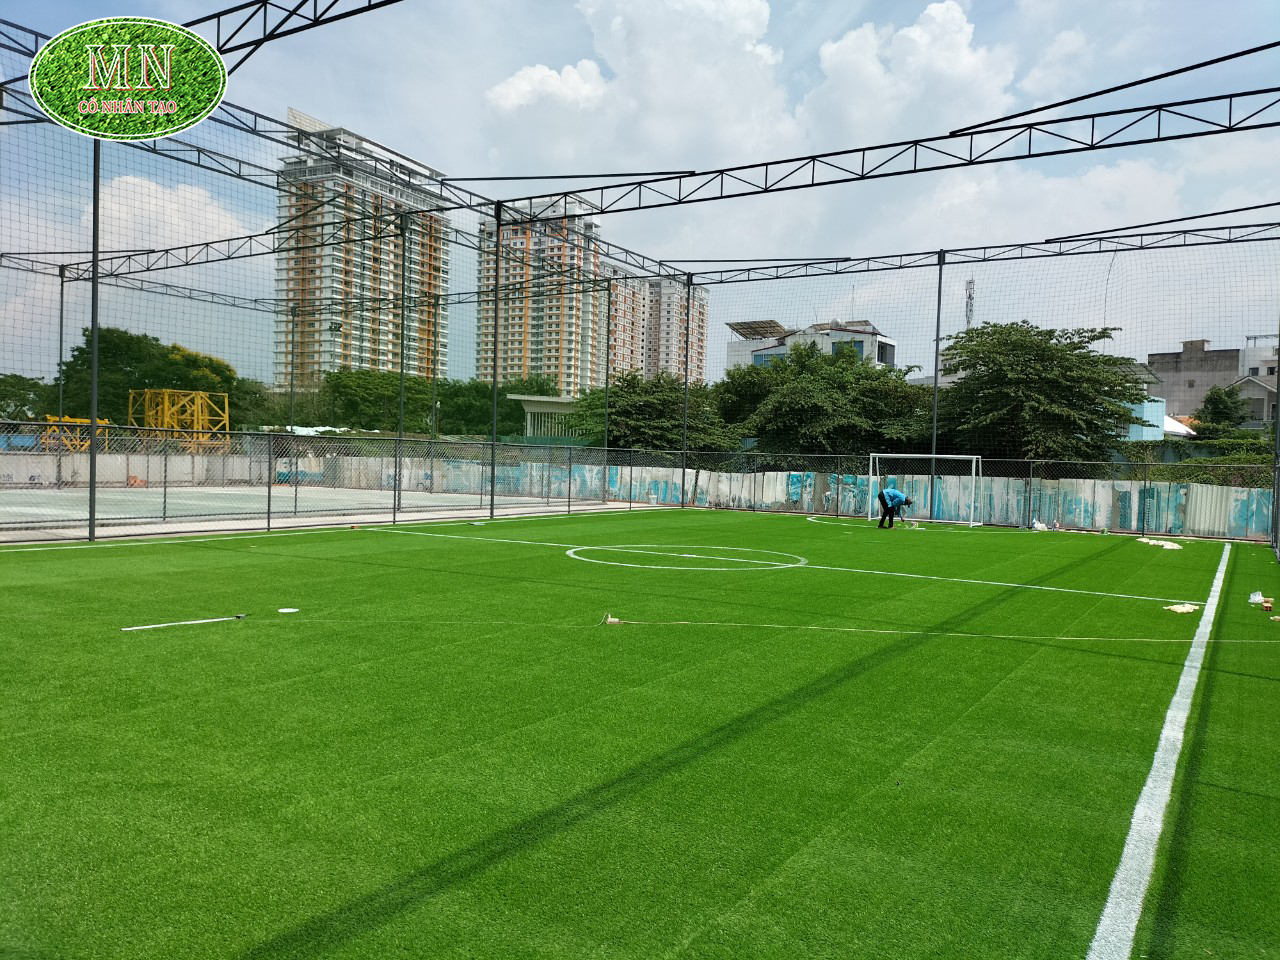 Sân bóng cỏ nhân tạo ngày càng được ưa chuộng bởi độ bền cao